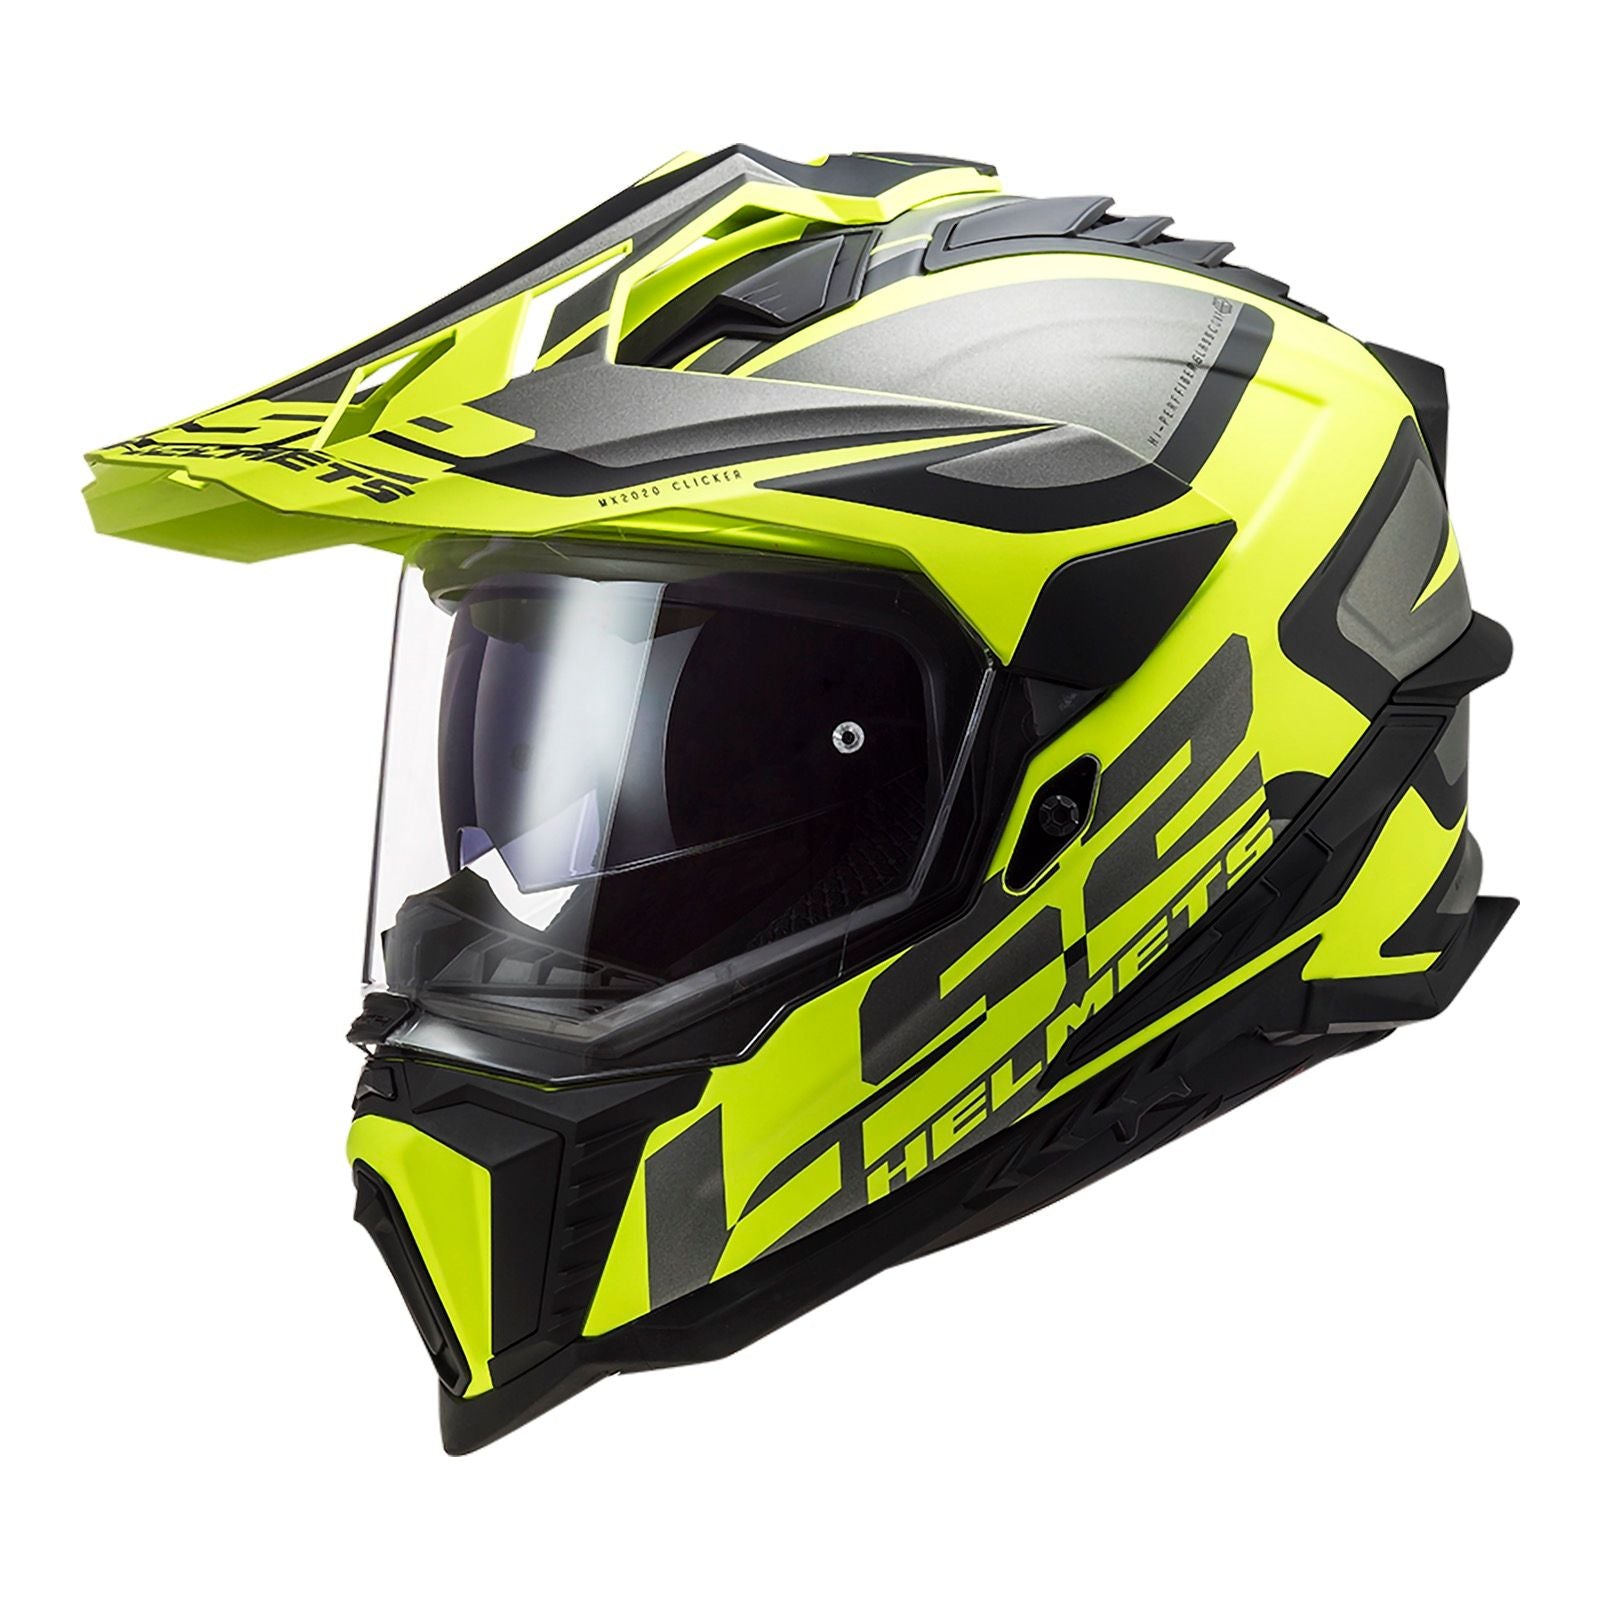 New LS2 Explorer Alter Helmet - Matte Black / Hi-Vis (M) #LS2MX701ALTMBYM